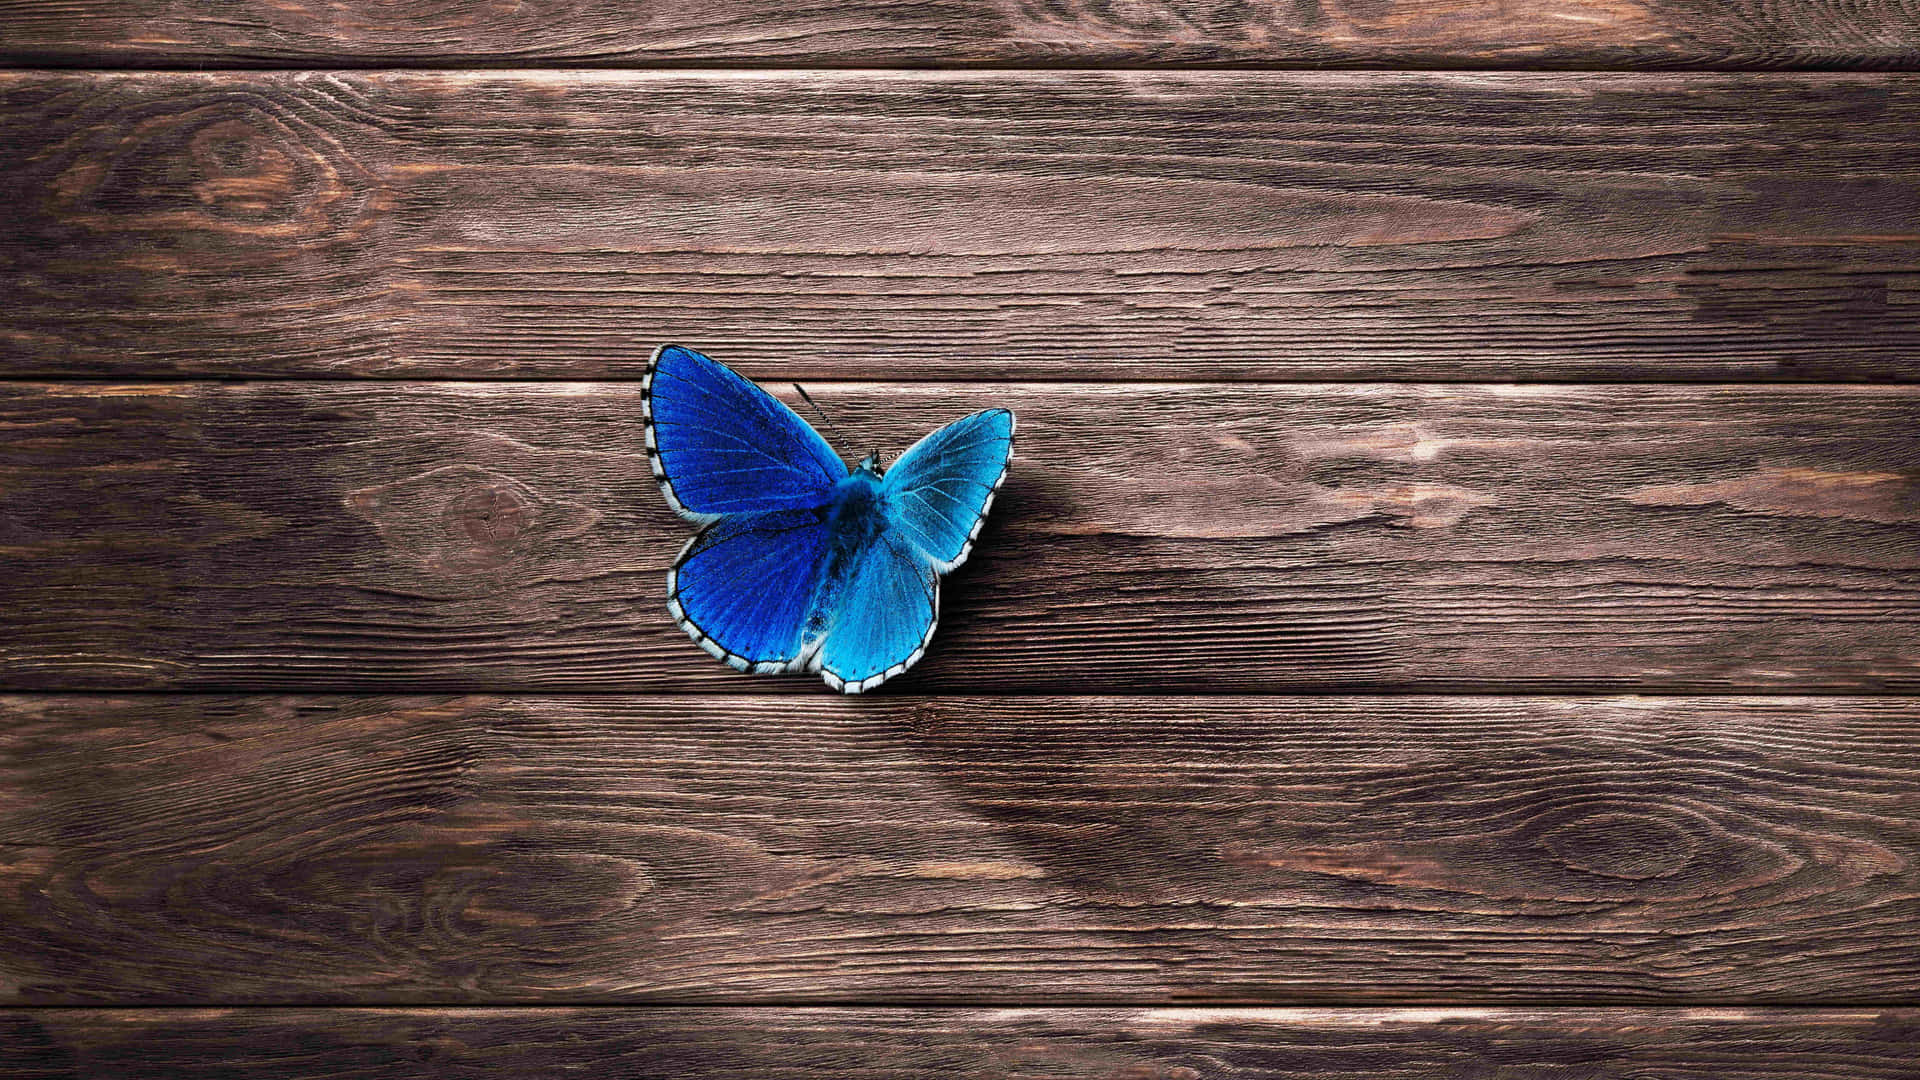 Schönheitder Natur: Ein Blauer Schmetterling Schwebt Sanft